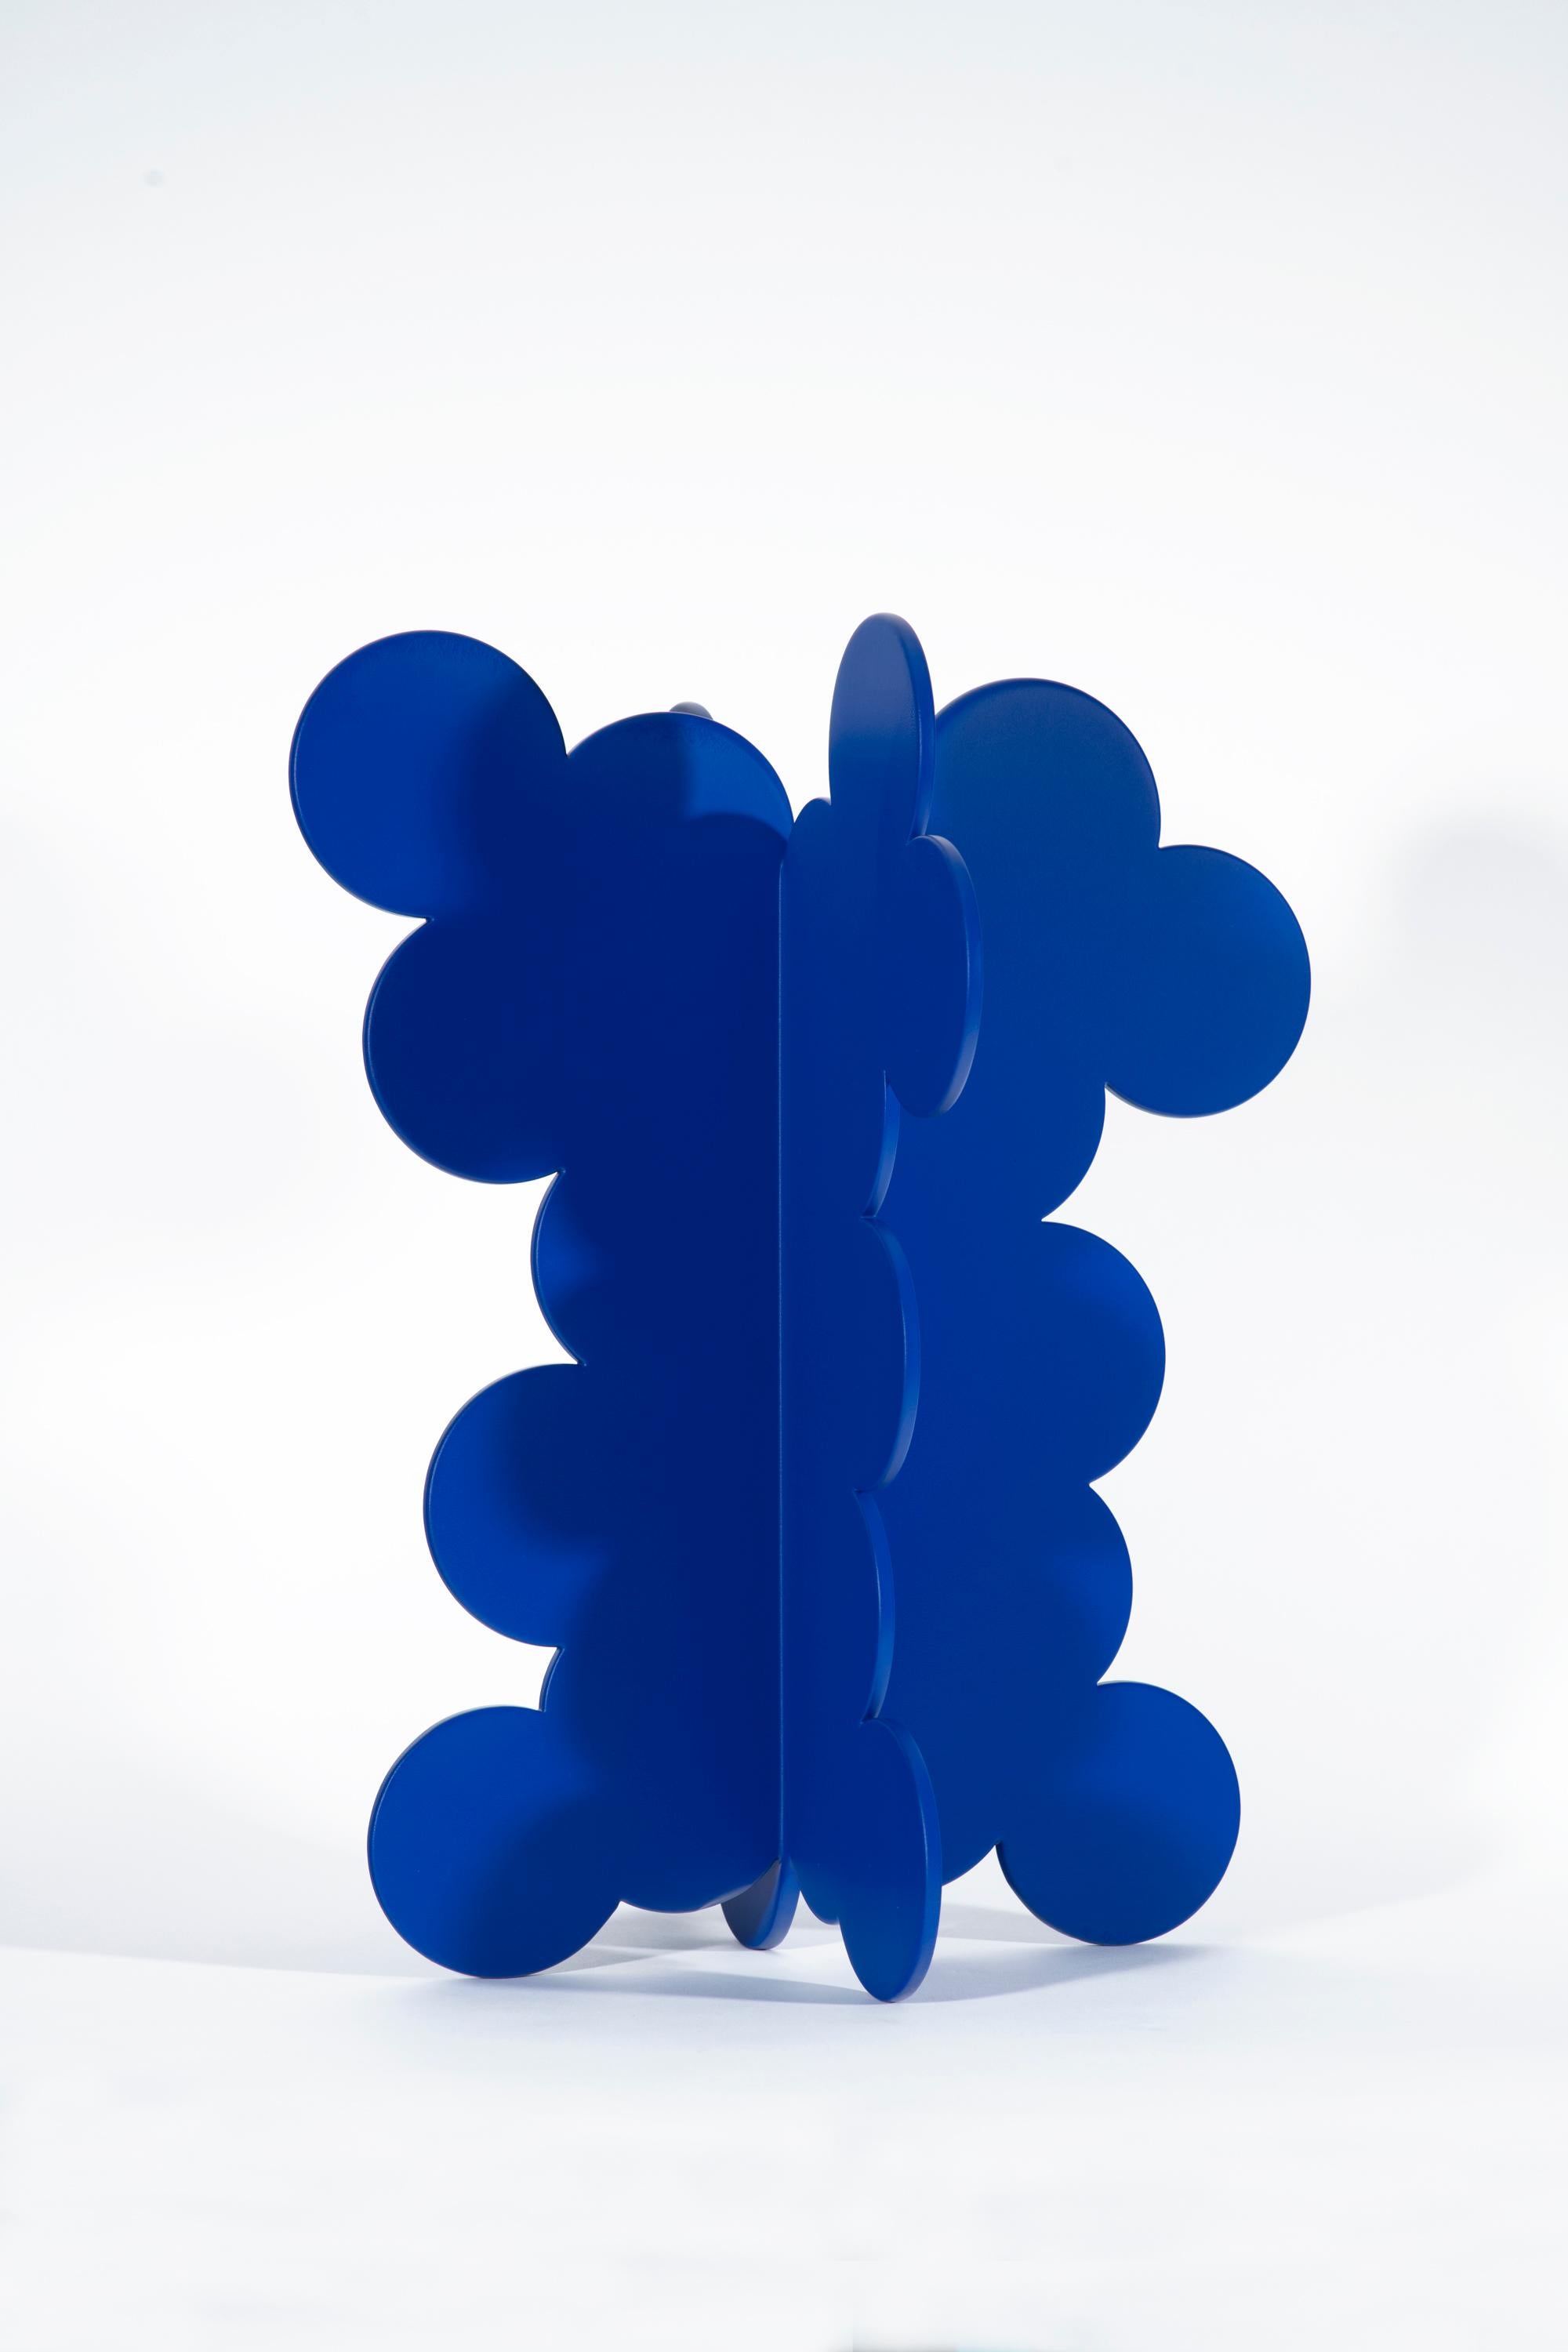 Blasen 1 – Sculpture von Billy Criswell